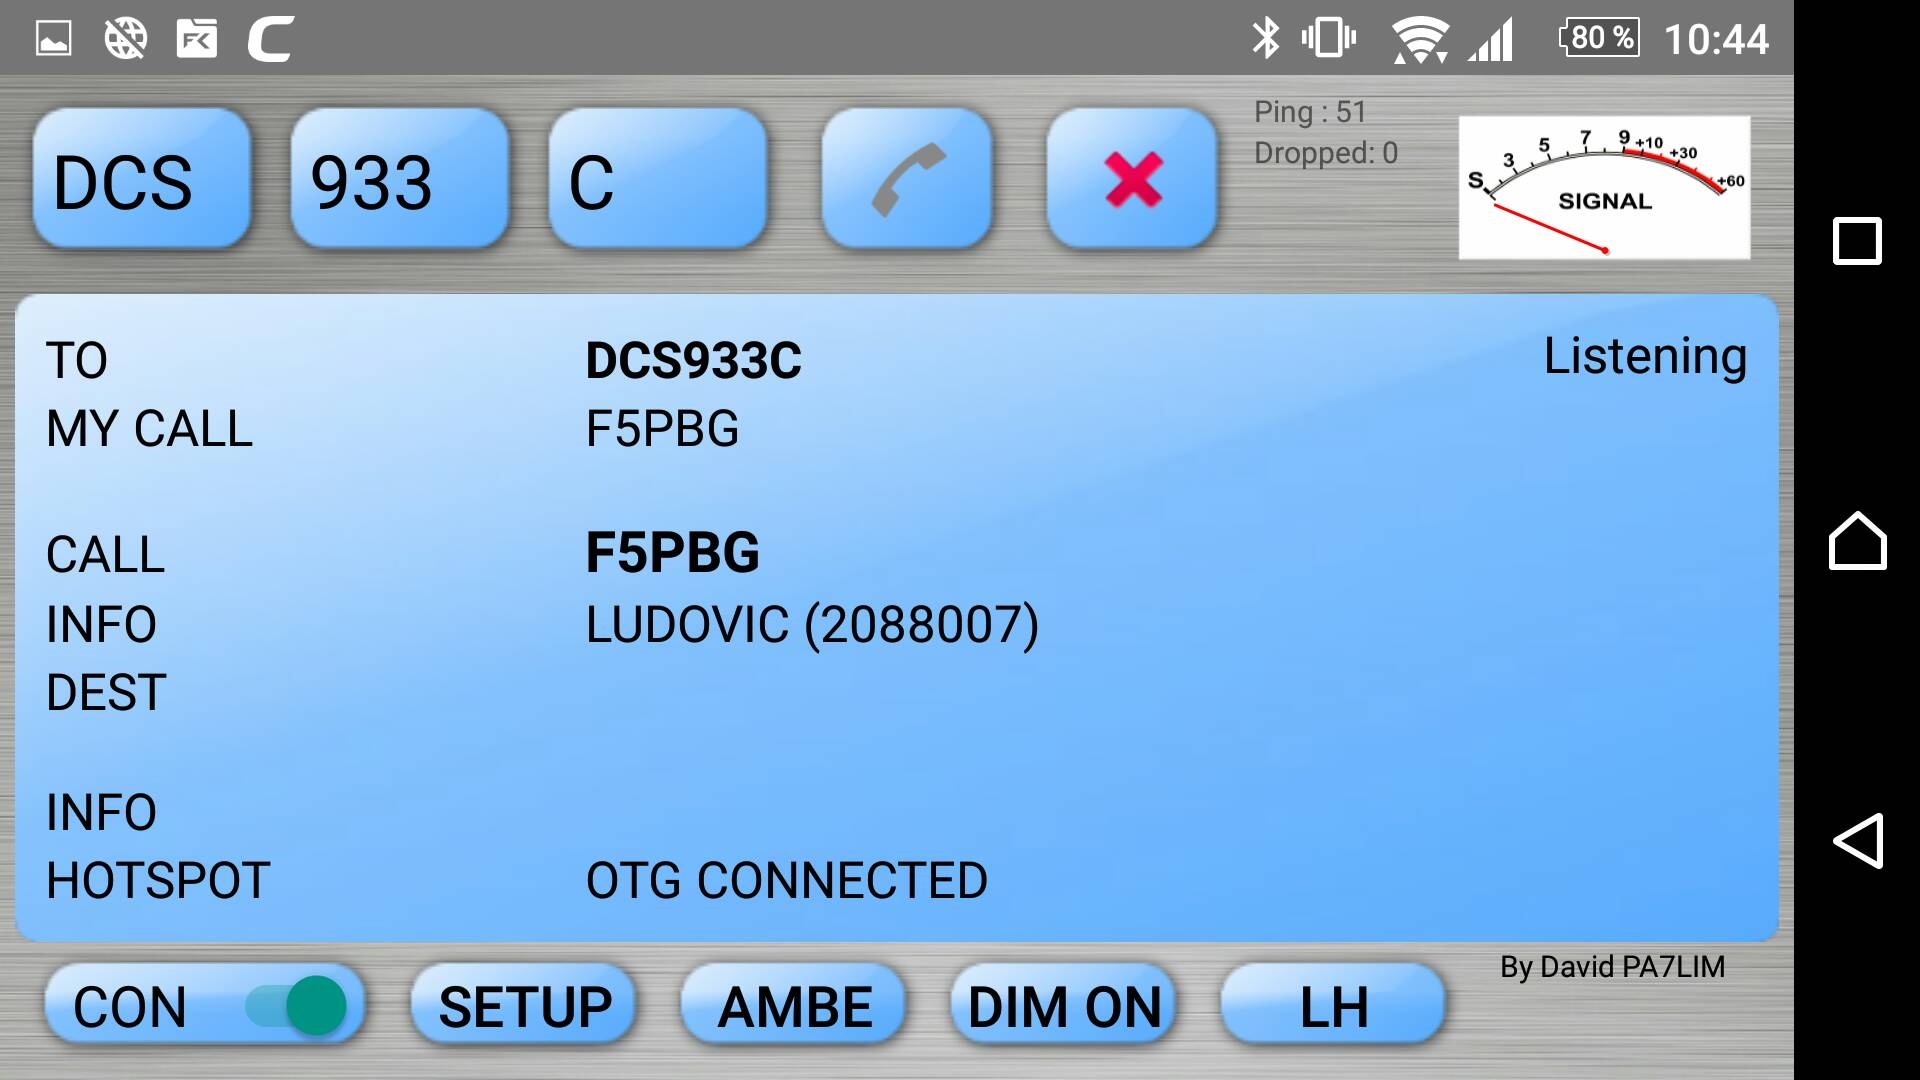 Clé USB DVstick 30 de DVMEGA : Configuration clé branchée directement sur SMARPHONE / Téléphone portable Android Bluedv-ambe-Portable-10